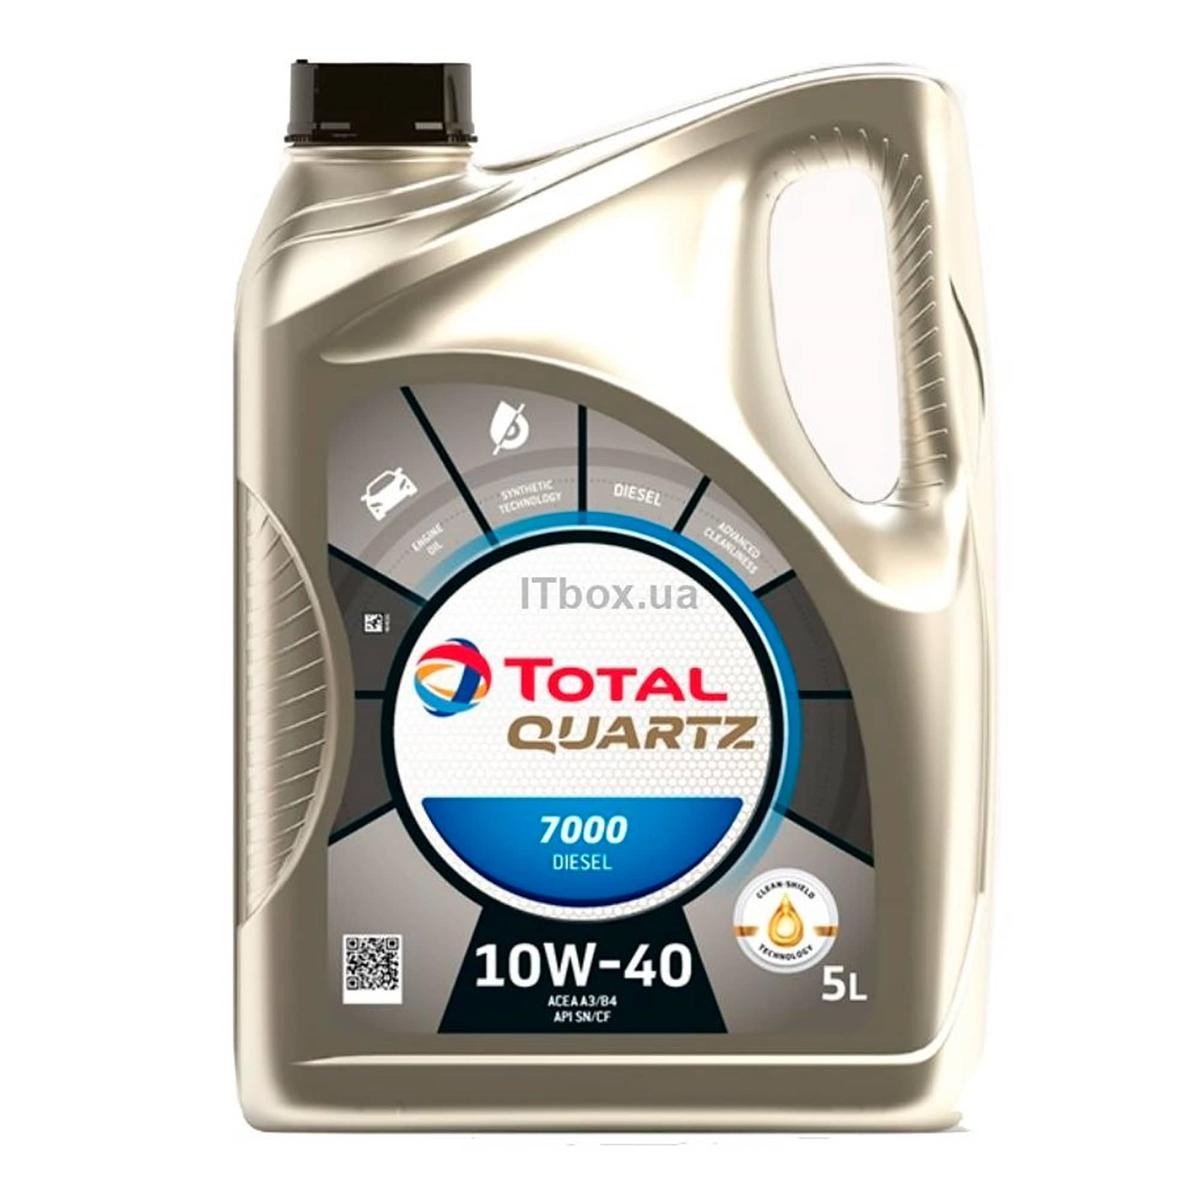 TOTAL Quartz, 7000 Diesel 10W-40, 5L, aceite parcialmente sintético Aceite para motor 2202844 comprar online